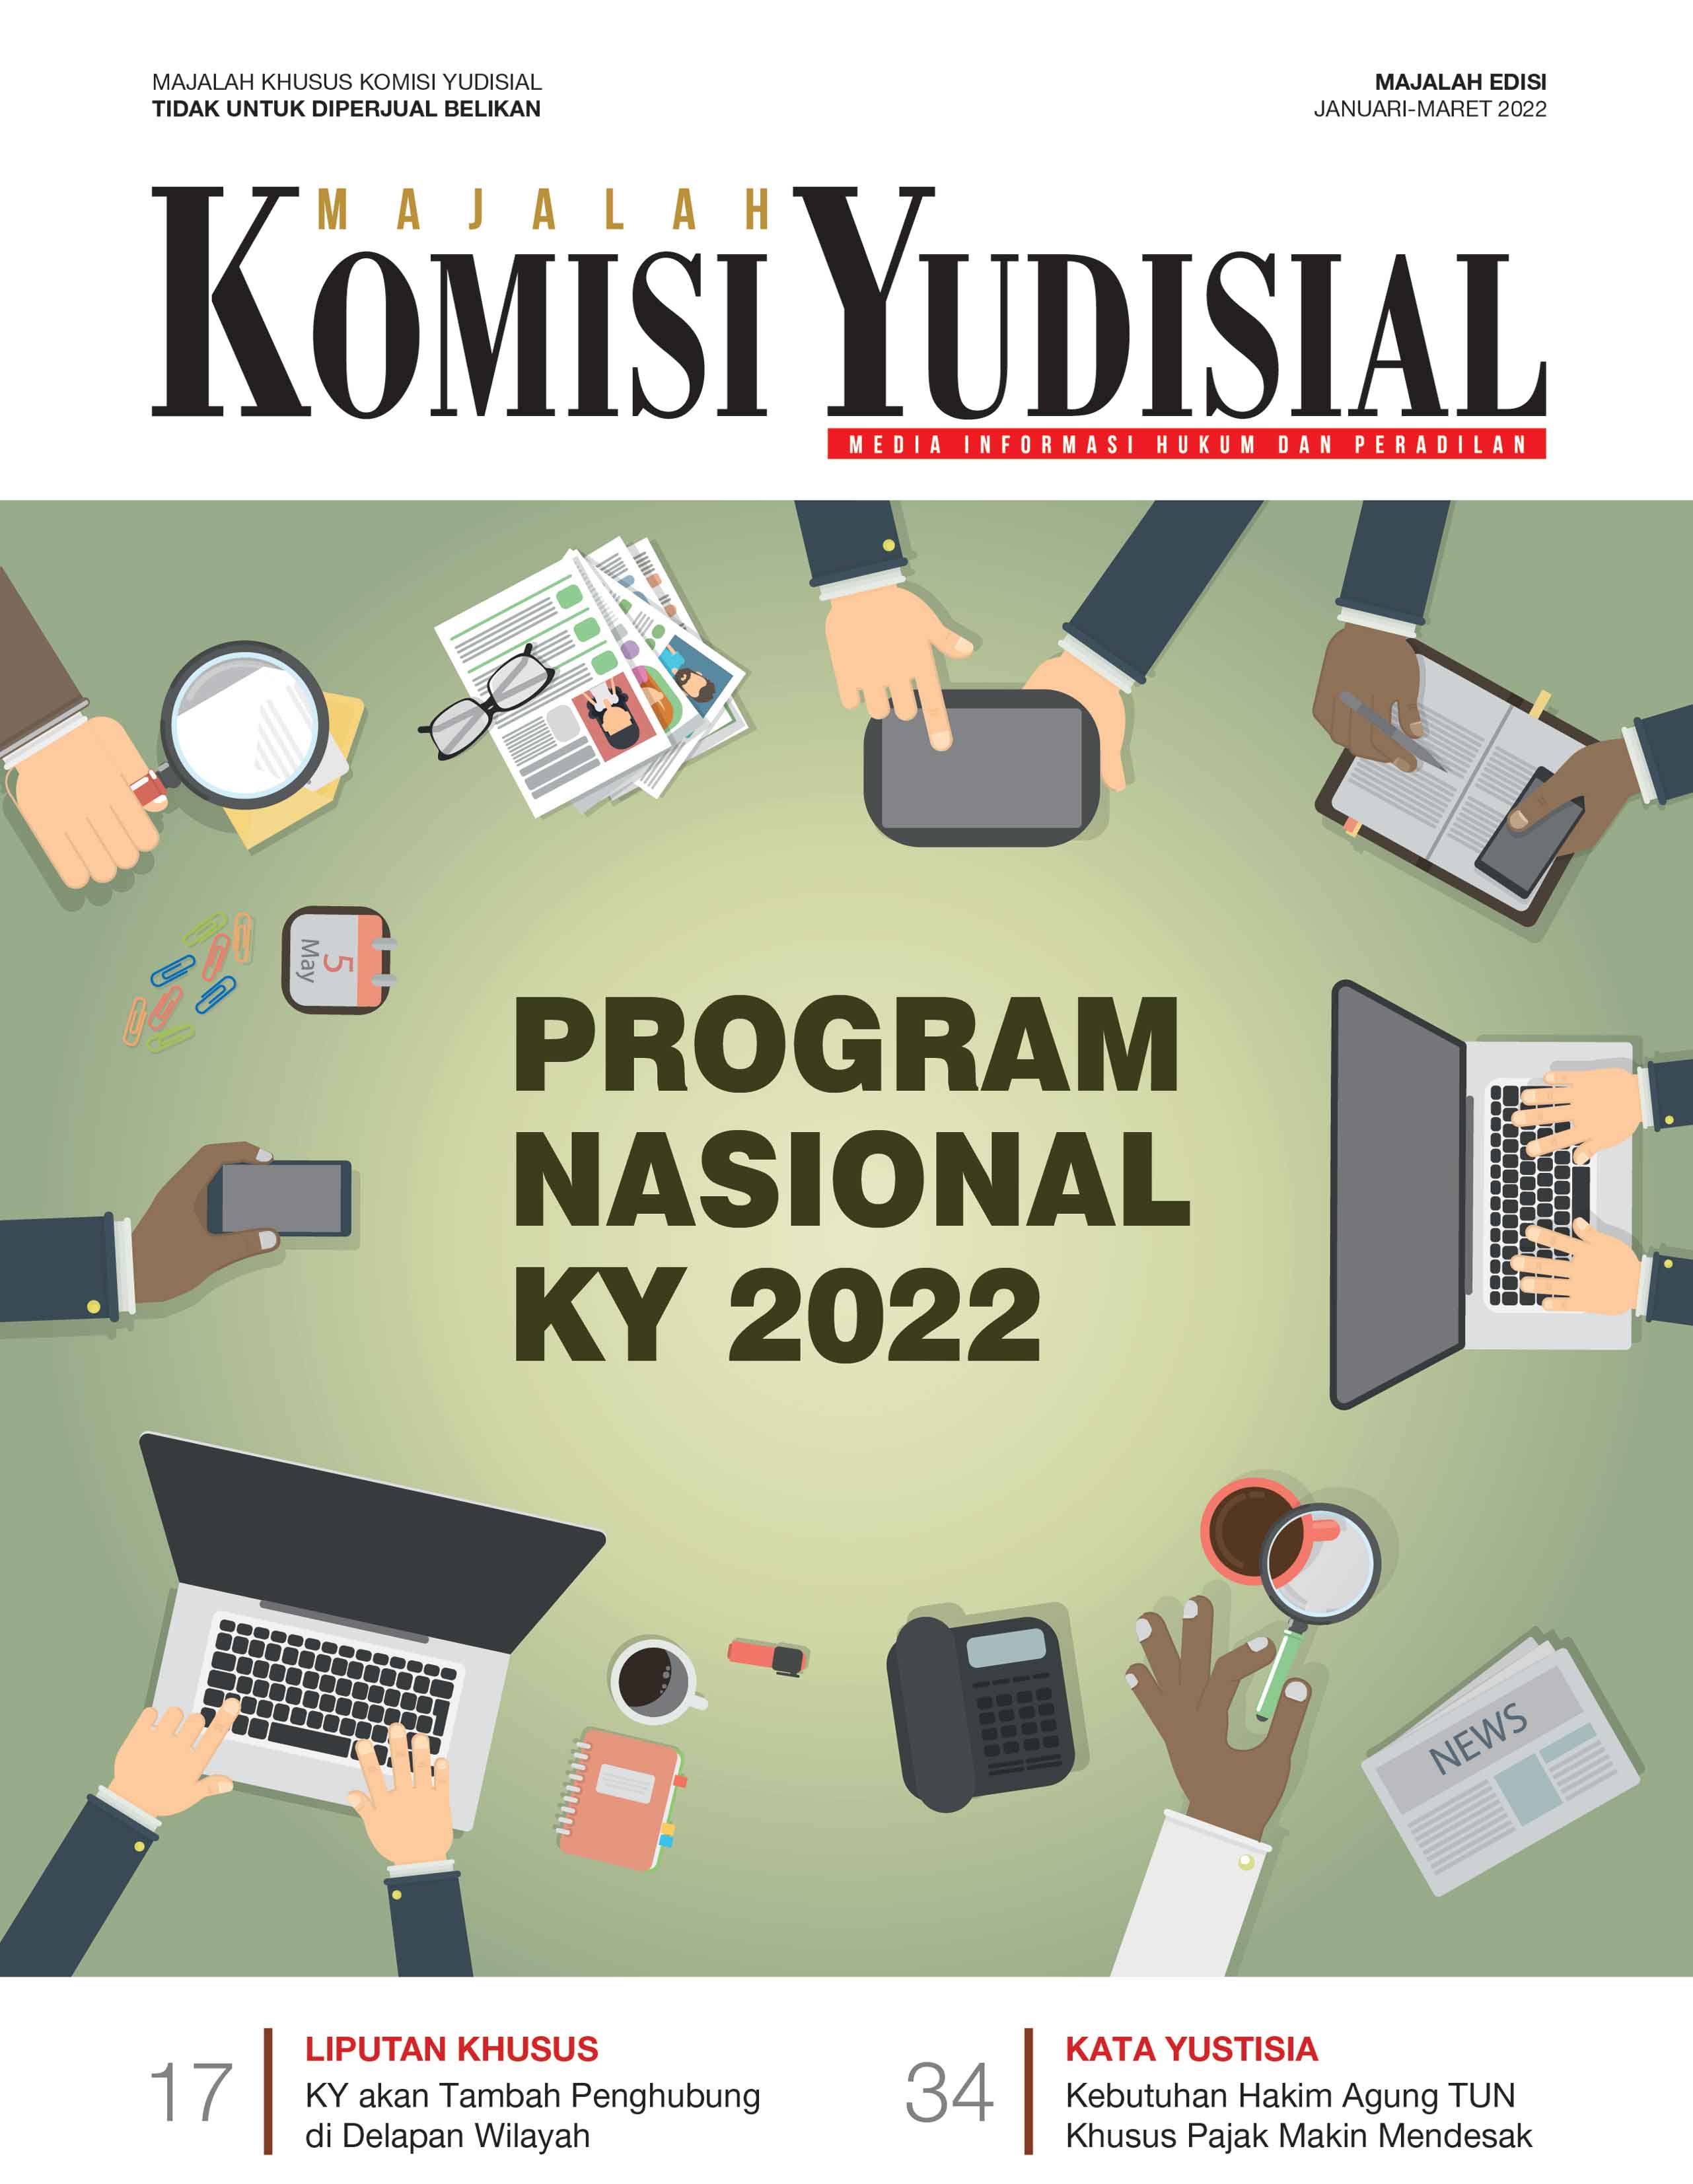 Majalah Komisi Yudisial edisi Januari-Maret 2022